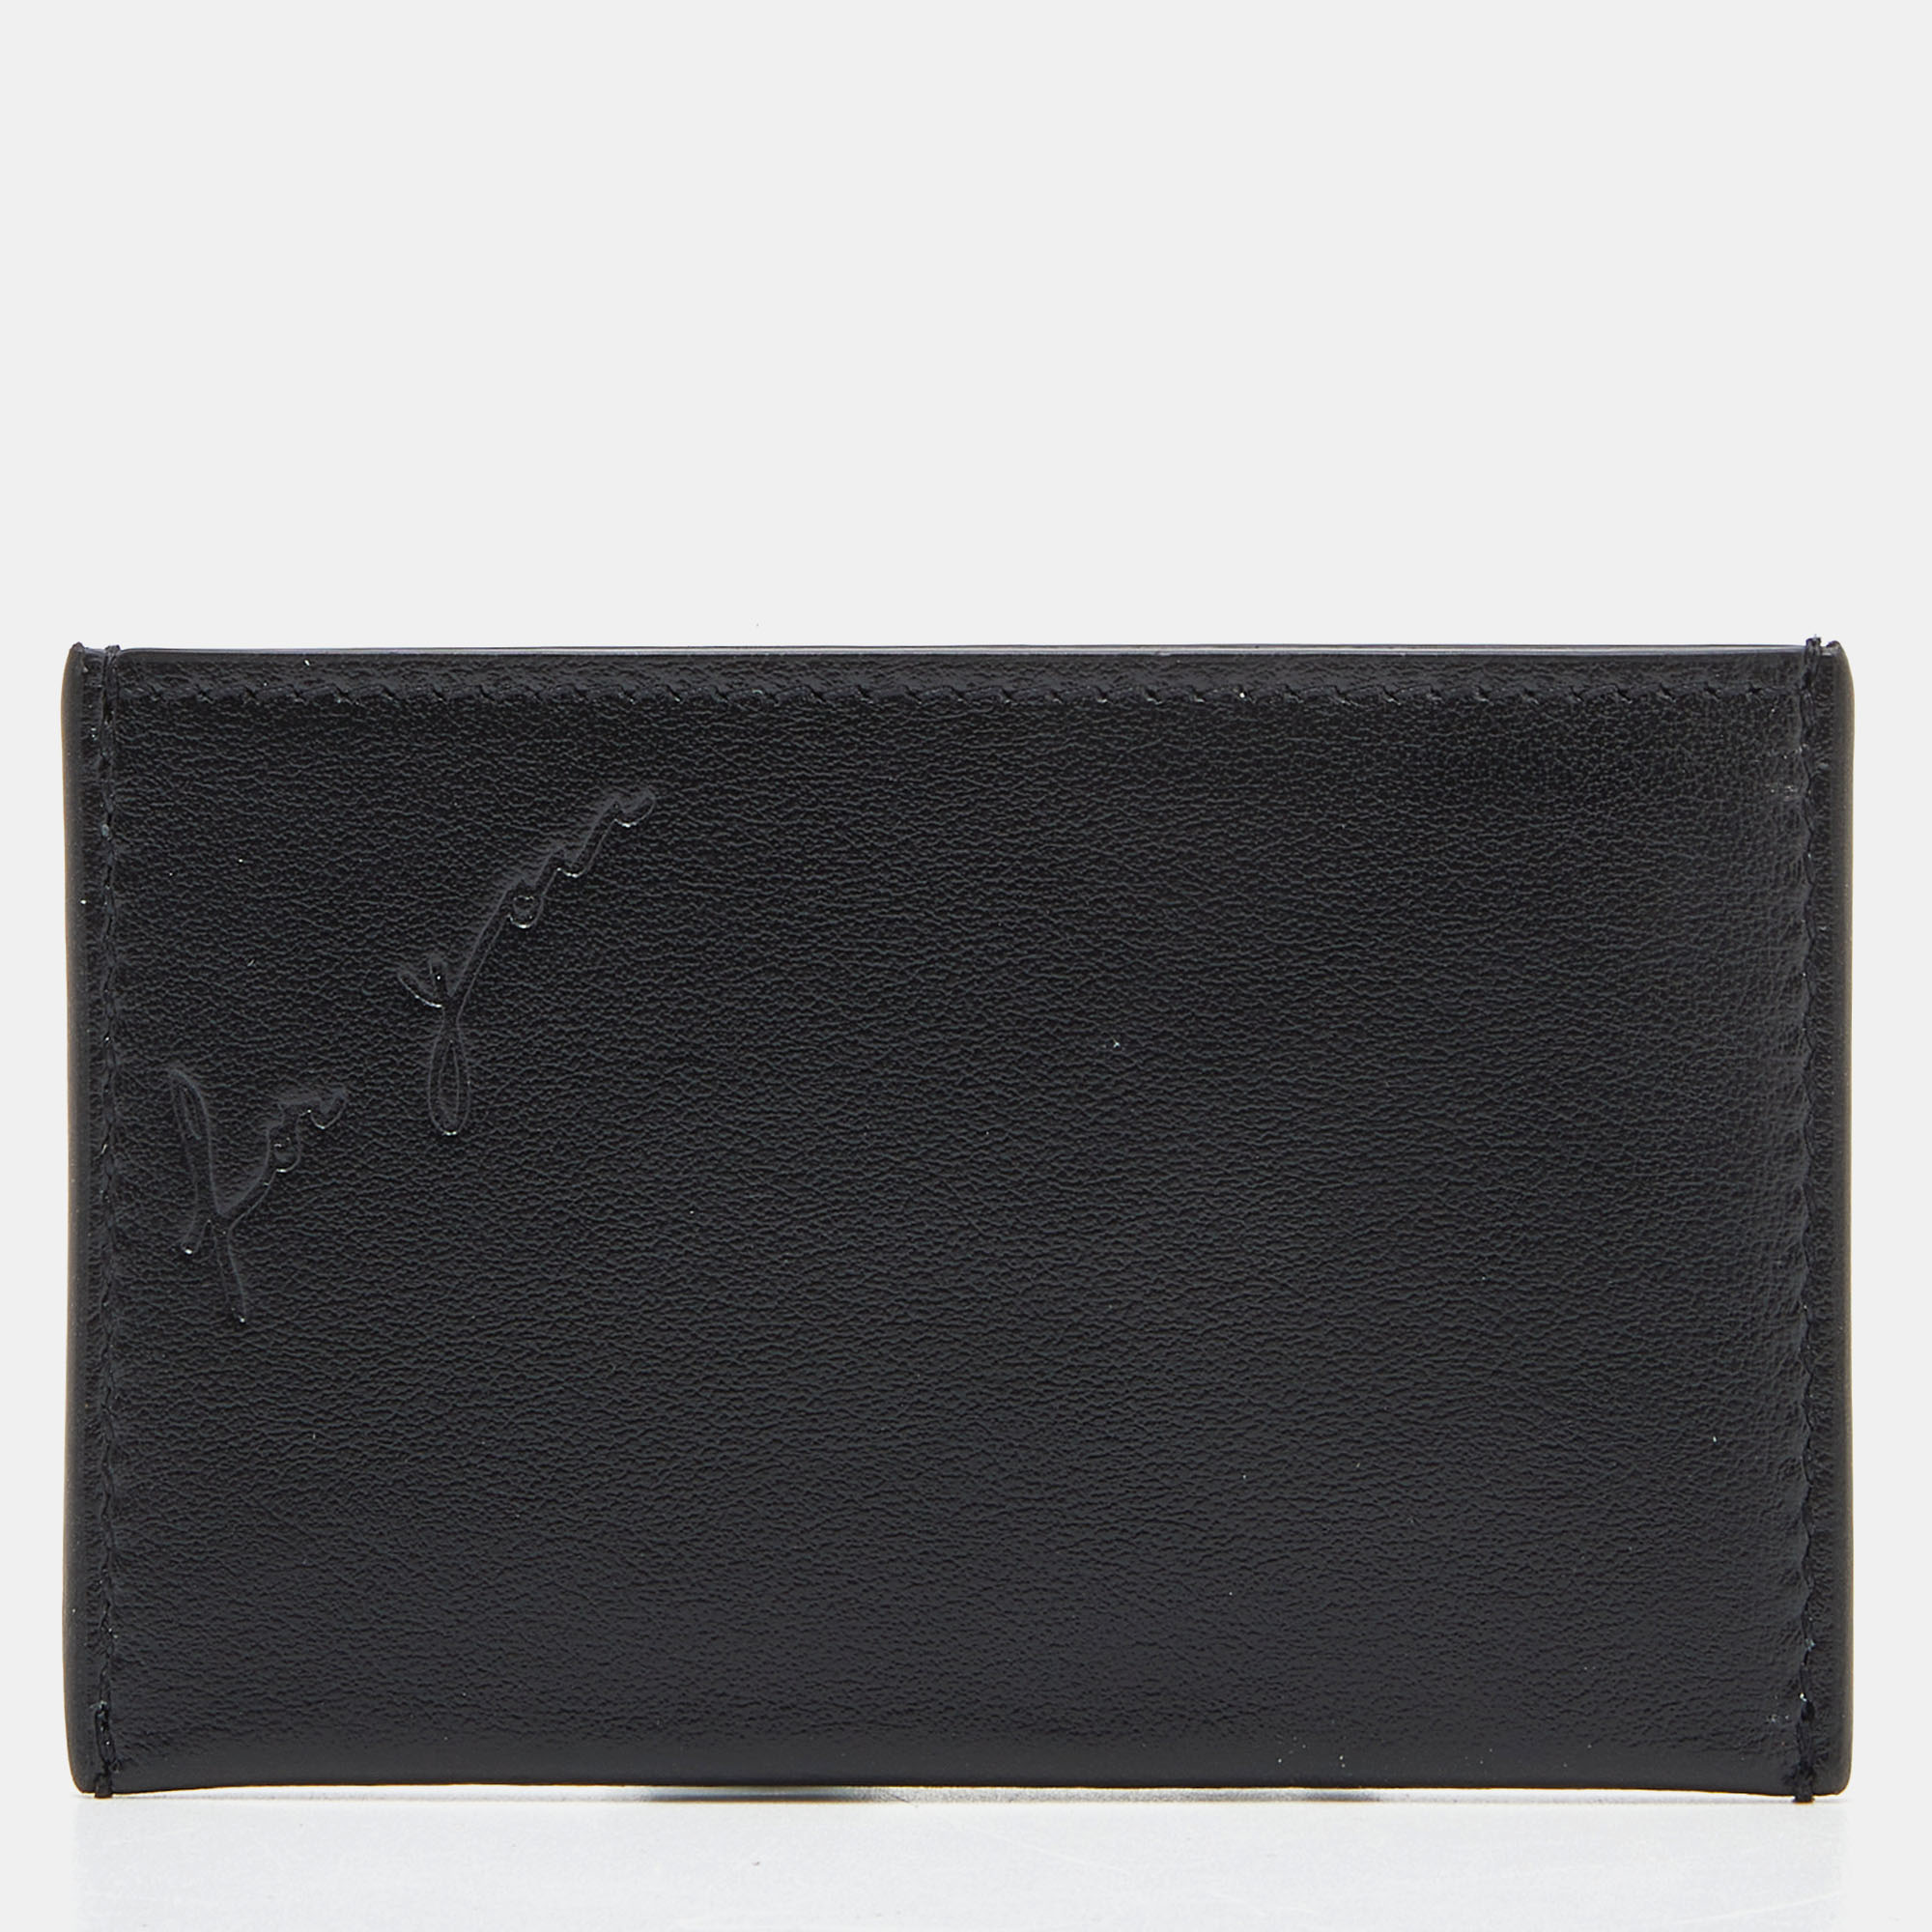 Saint Laurent Black Leather Pocket Mirror Case